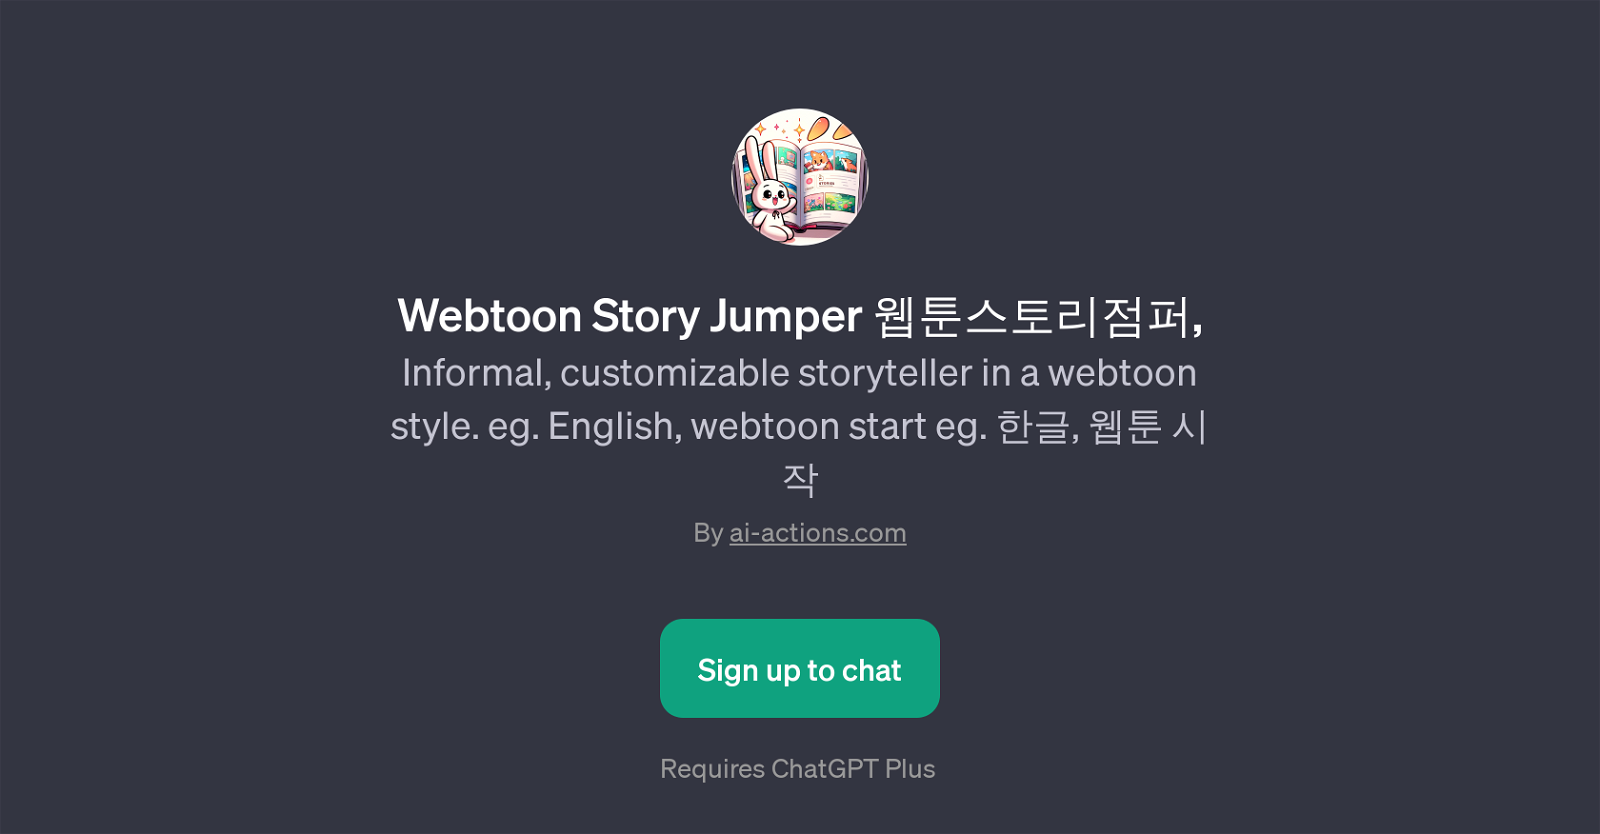 Webtoon Story Jumper website